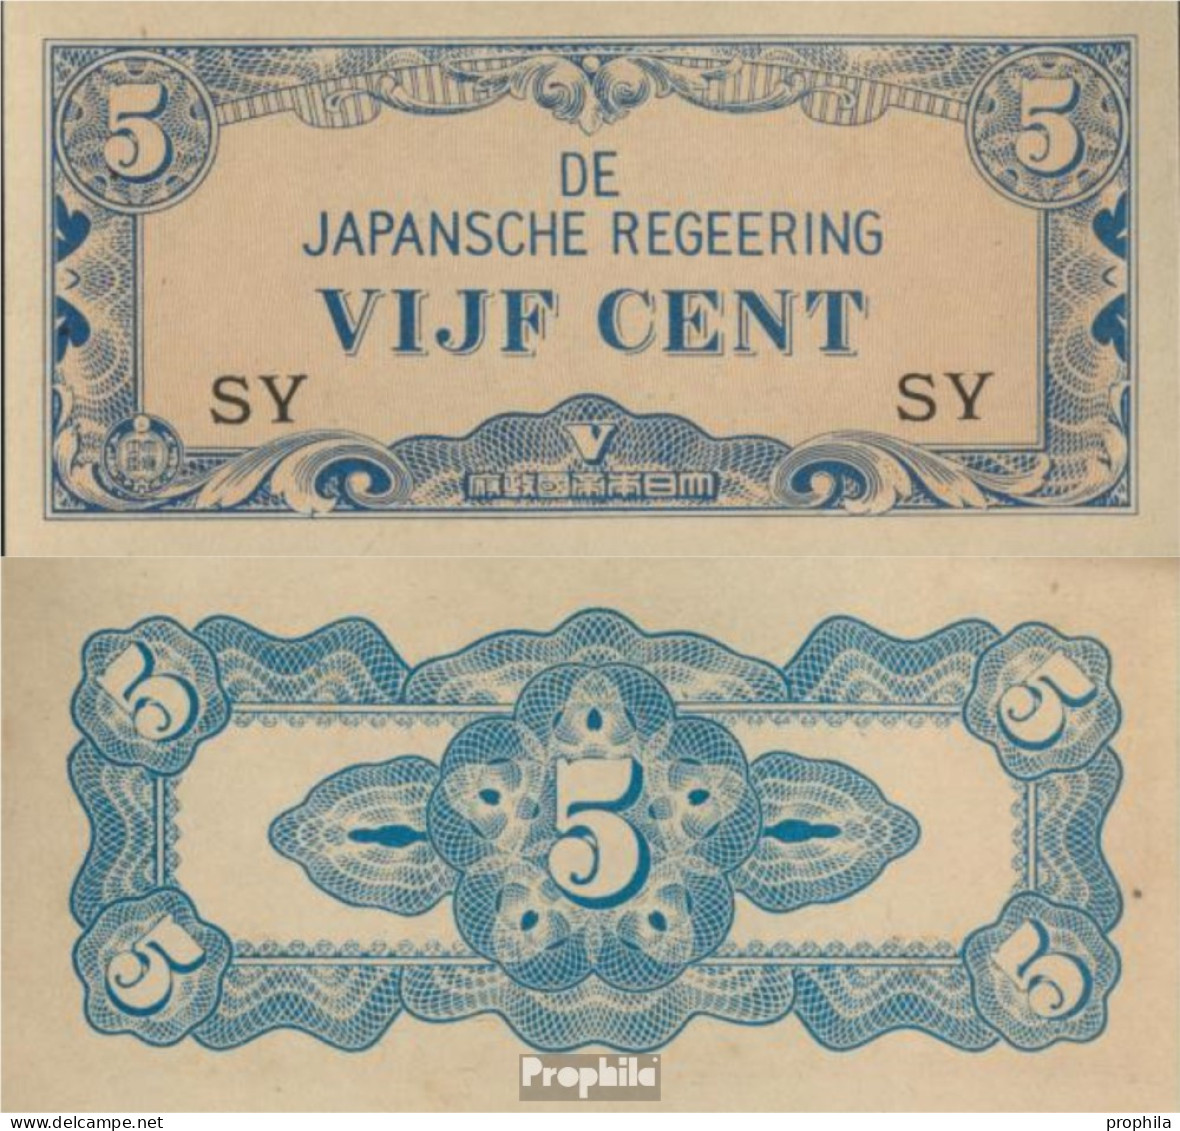 Niederländisch Ost-Indien Pick-Nr: 120b Bankfrisch 1942 5 Cent - Dutch East Indies